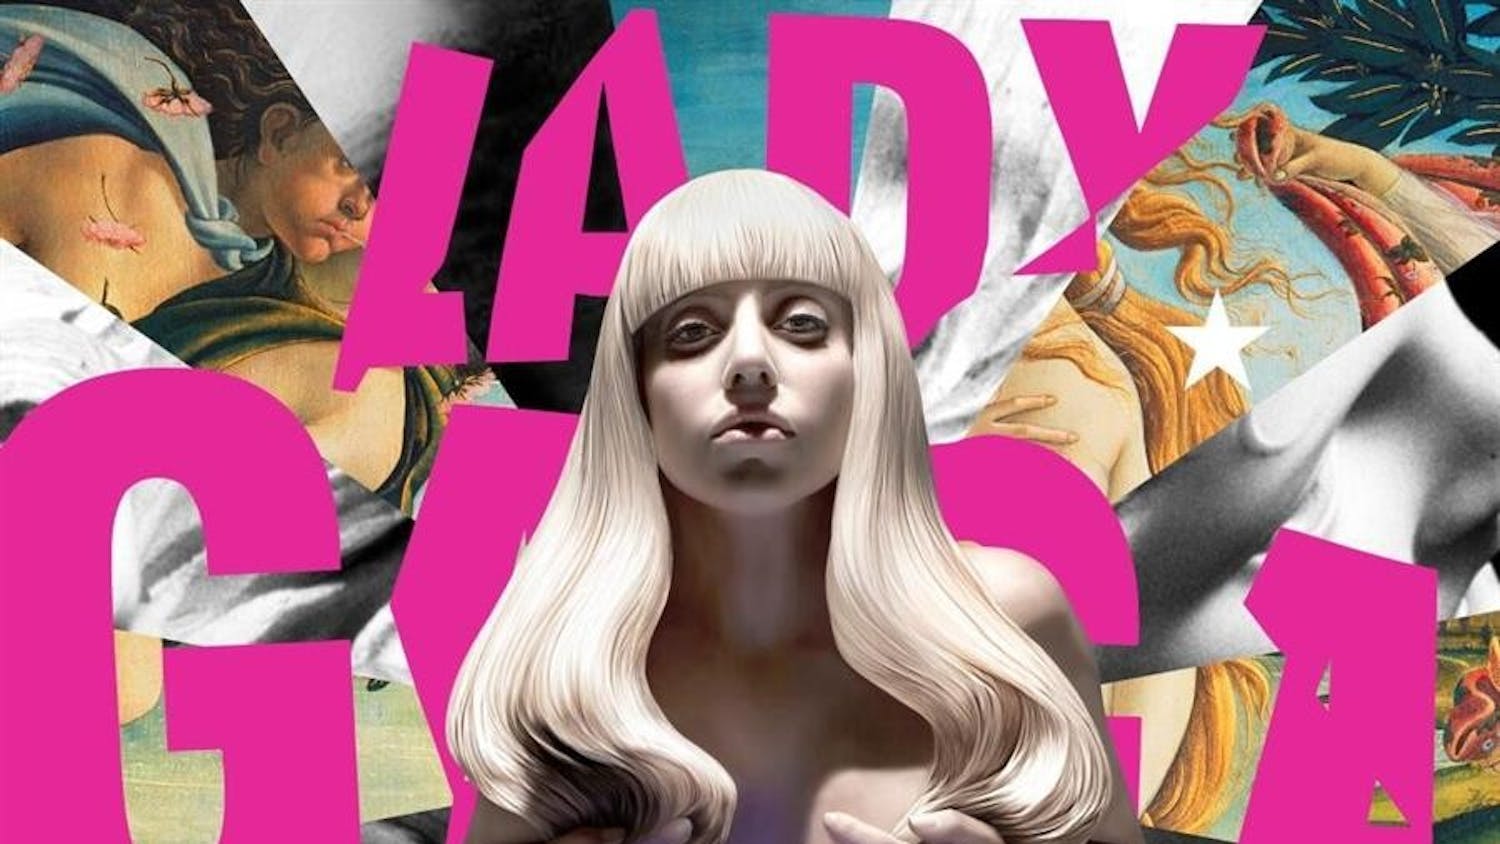 Lady Gaga, 'Artpop'